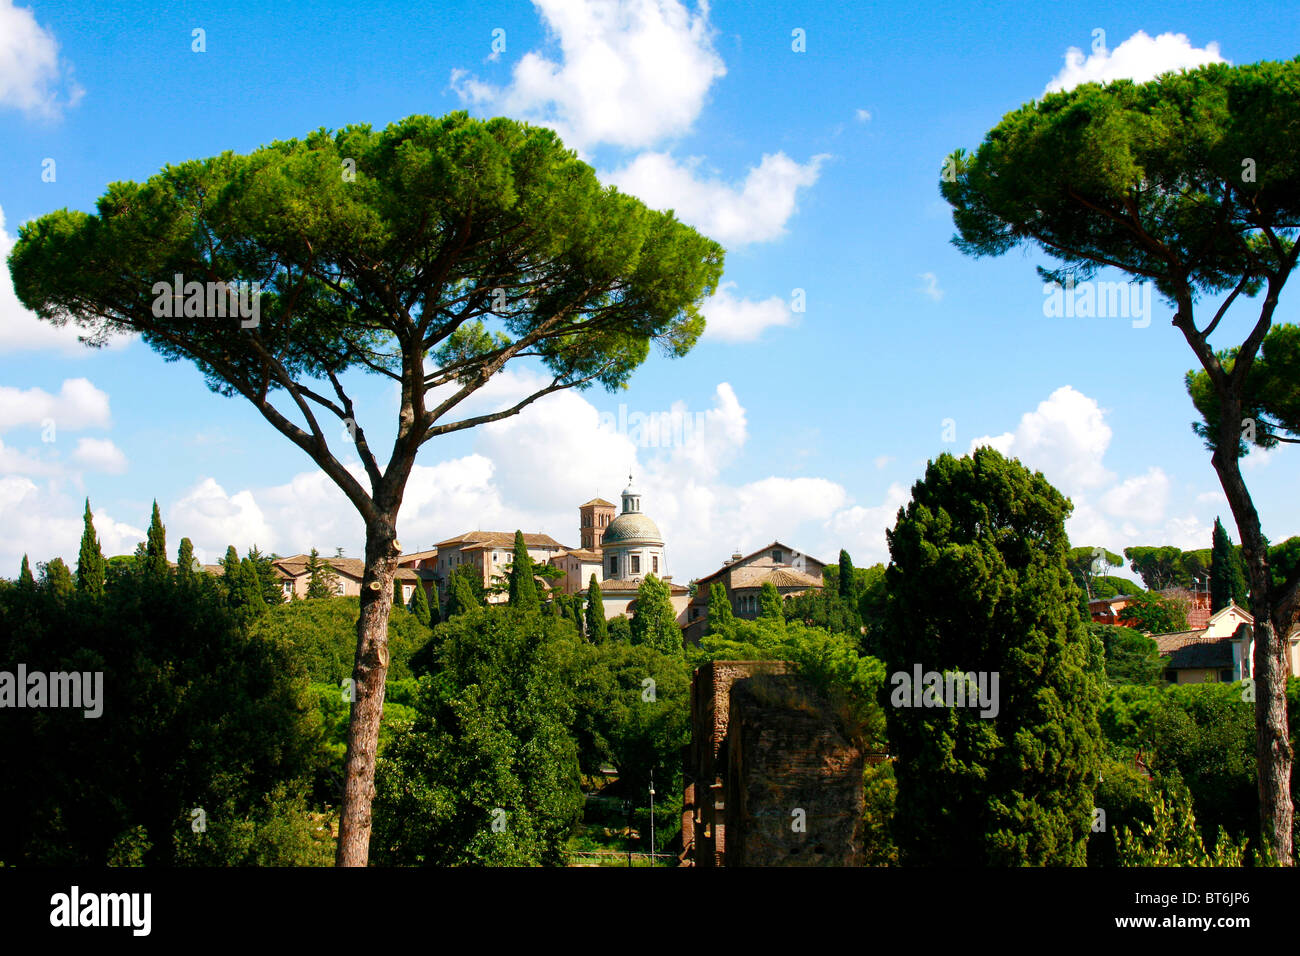 Italienischen Ambiente mit Akazien und einer antiken Villa gegen blauen Himmel Stockfoto